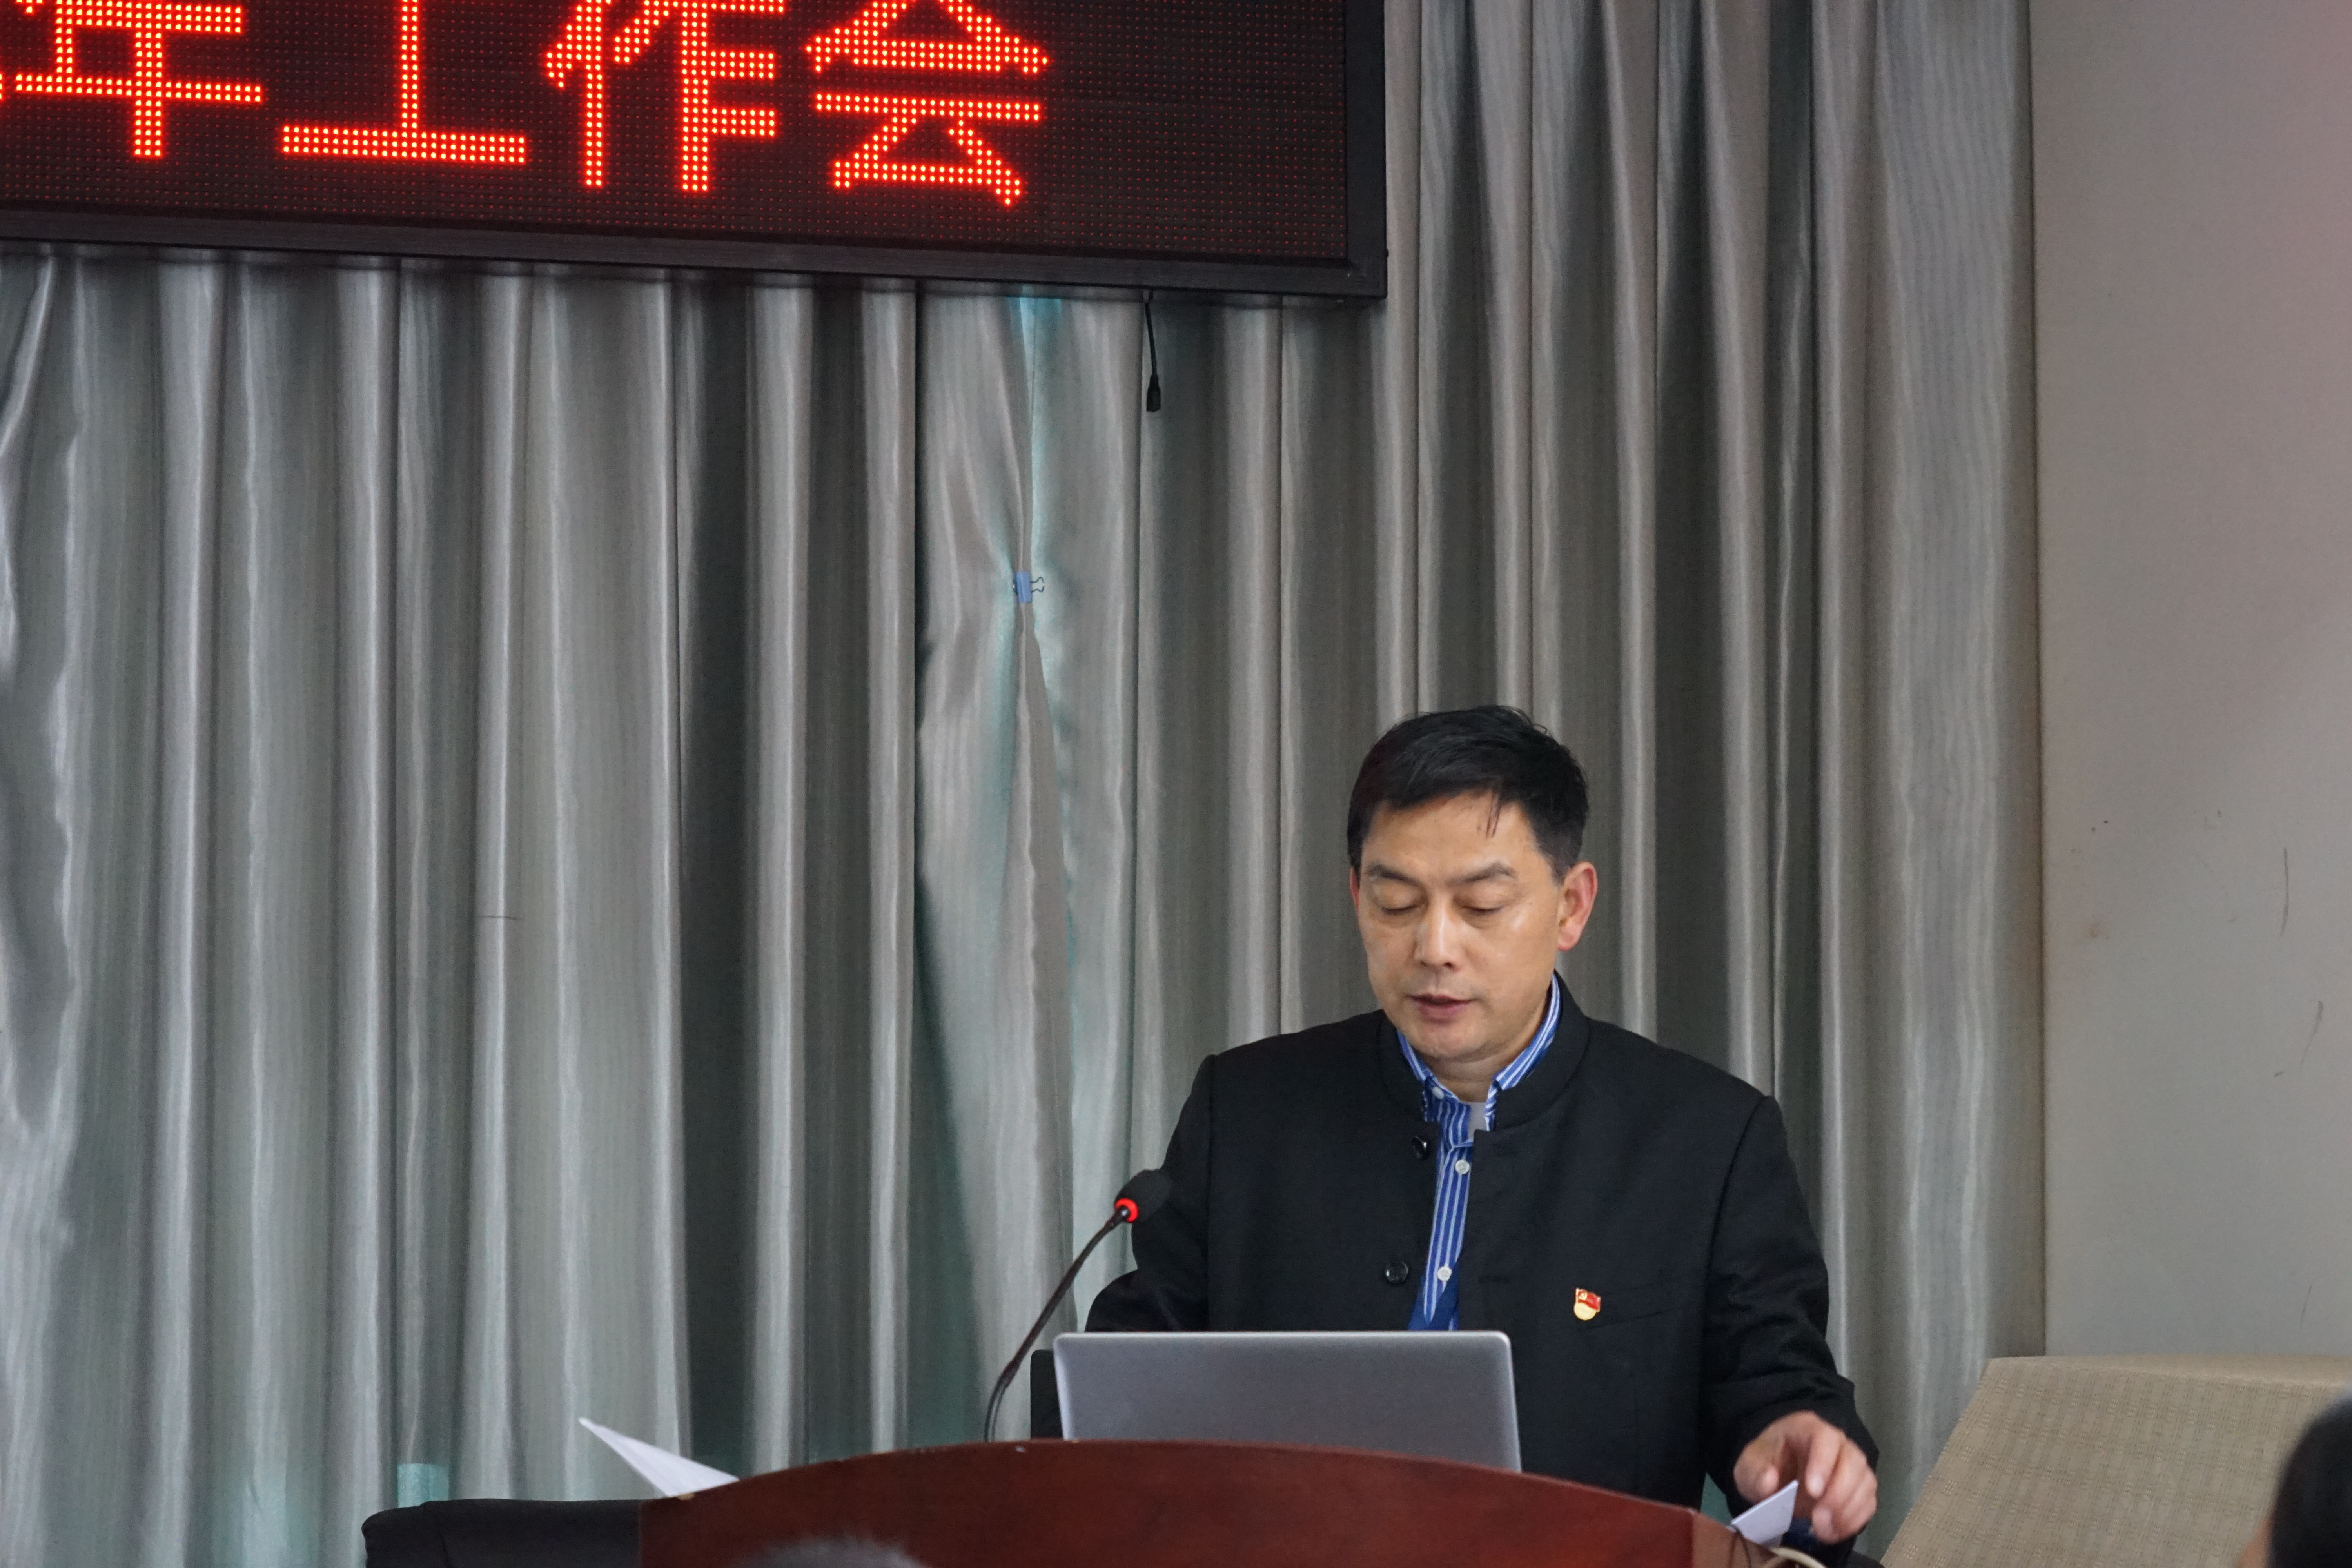 贵州铁路技师学院召开五届一次职代会暨2018年工作会